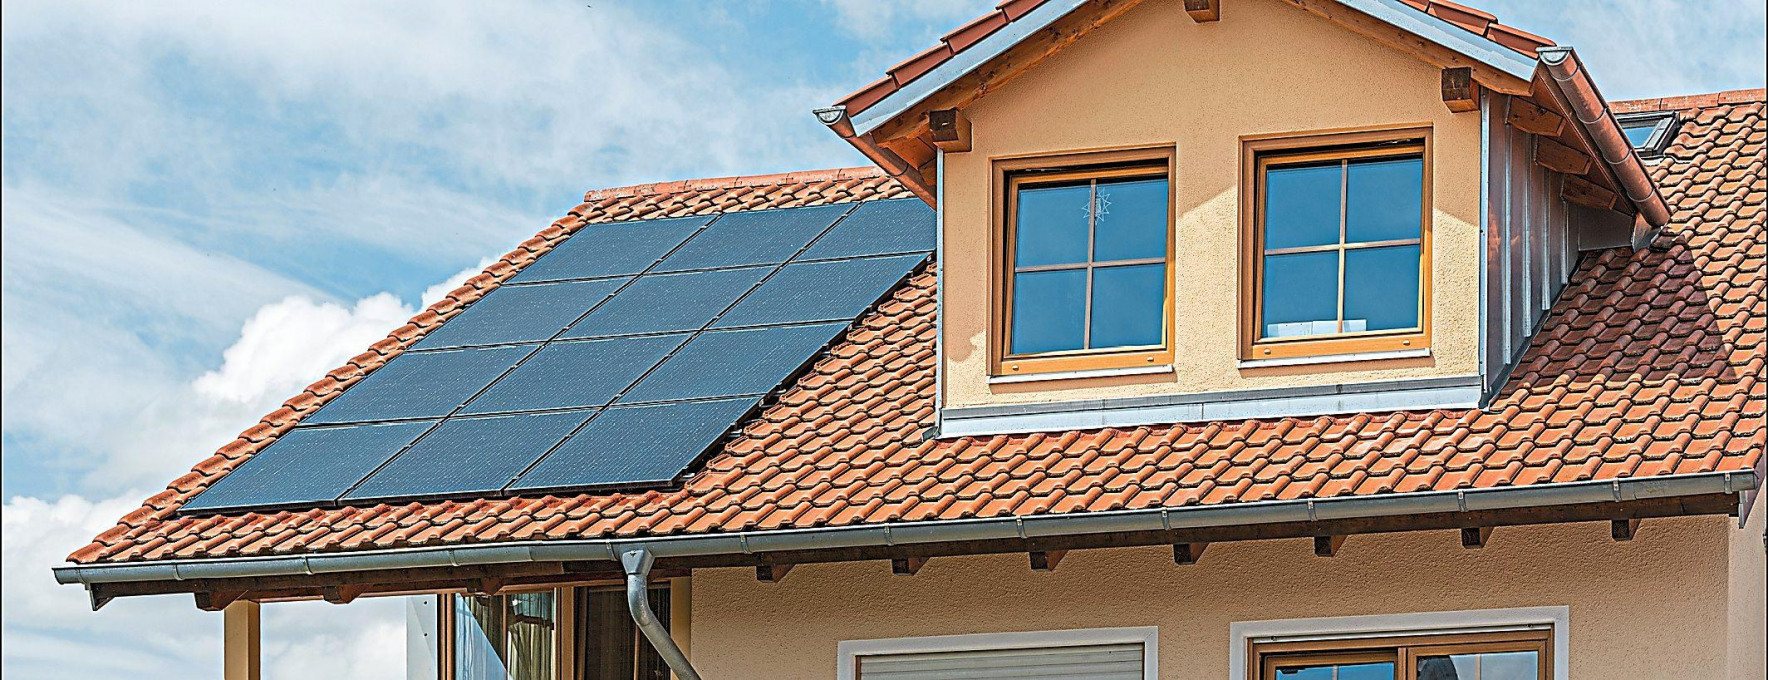 Ob in Kombination mit einer Wärmepumpe oder ohne: Eine Photovoltaikanlage kann für viele Hausbesitzer eine sinnvolle Investition sein. Foto: Creaton/txn